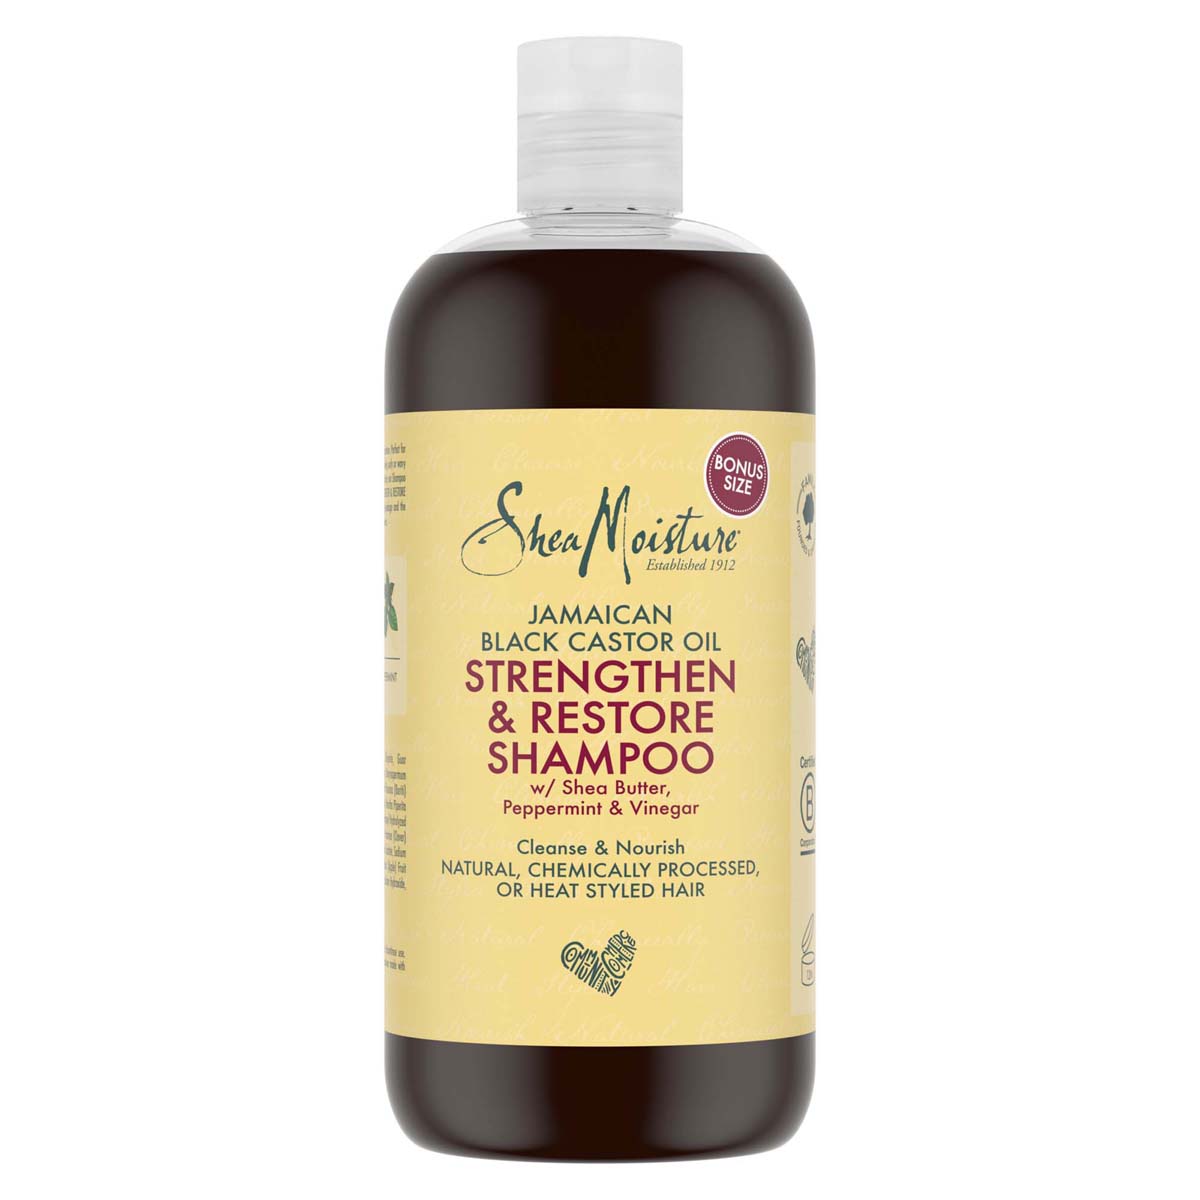 shea moisture jamaican black castor oil strengthen, grow & restore shampoo 473ml